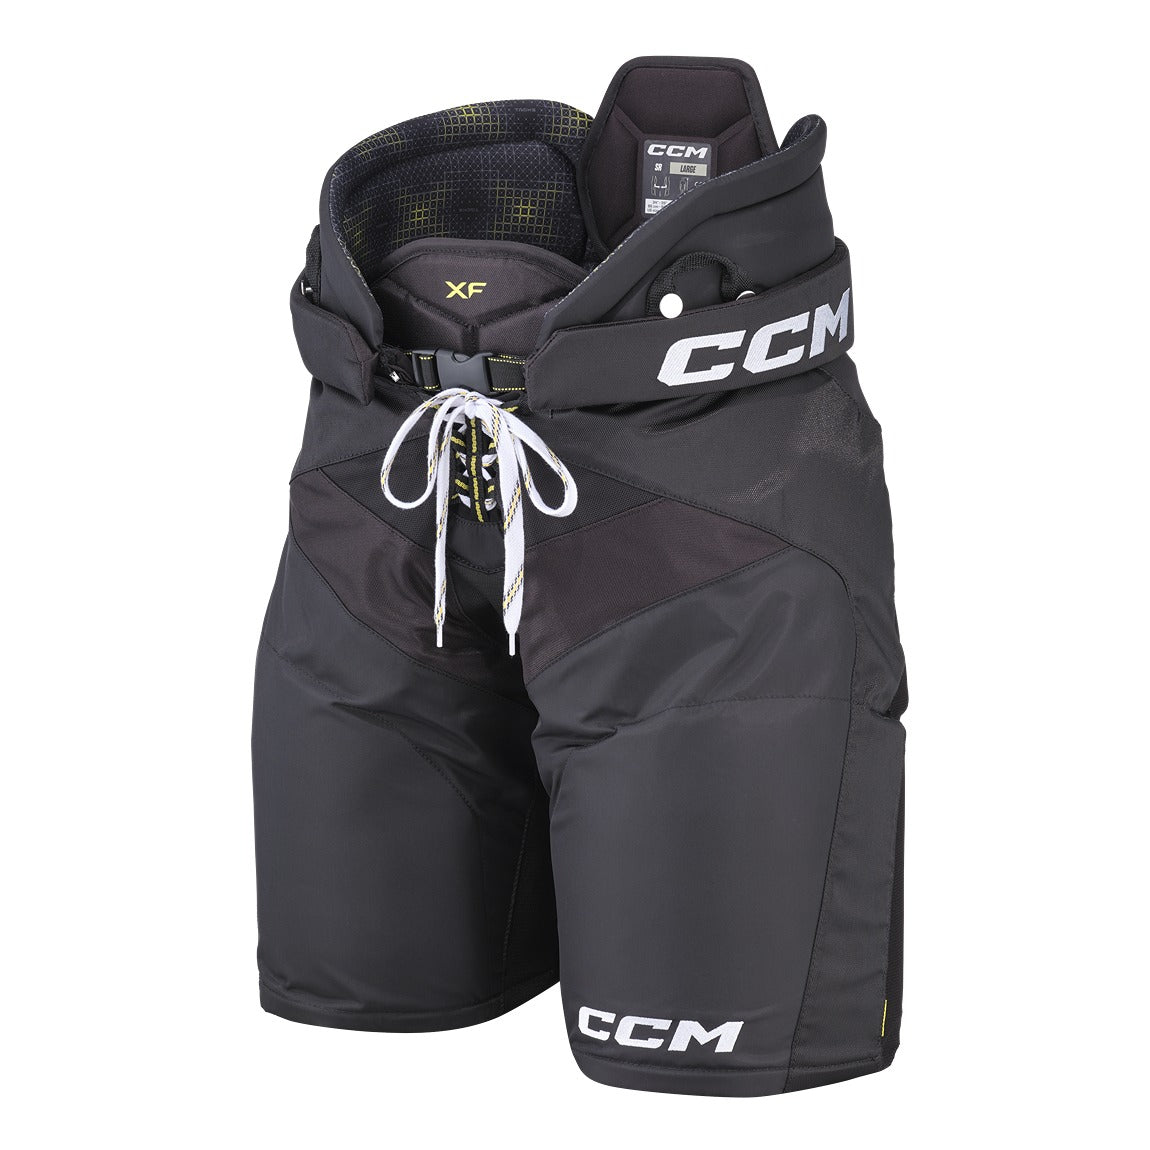 CCM Tacks XF Hockey Pants - Senior